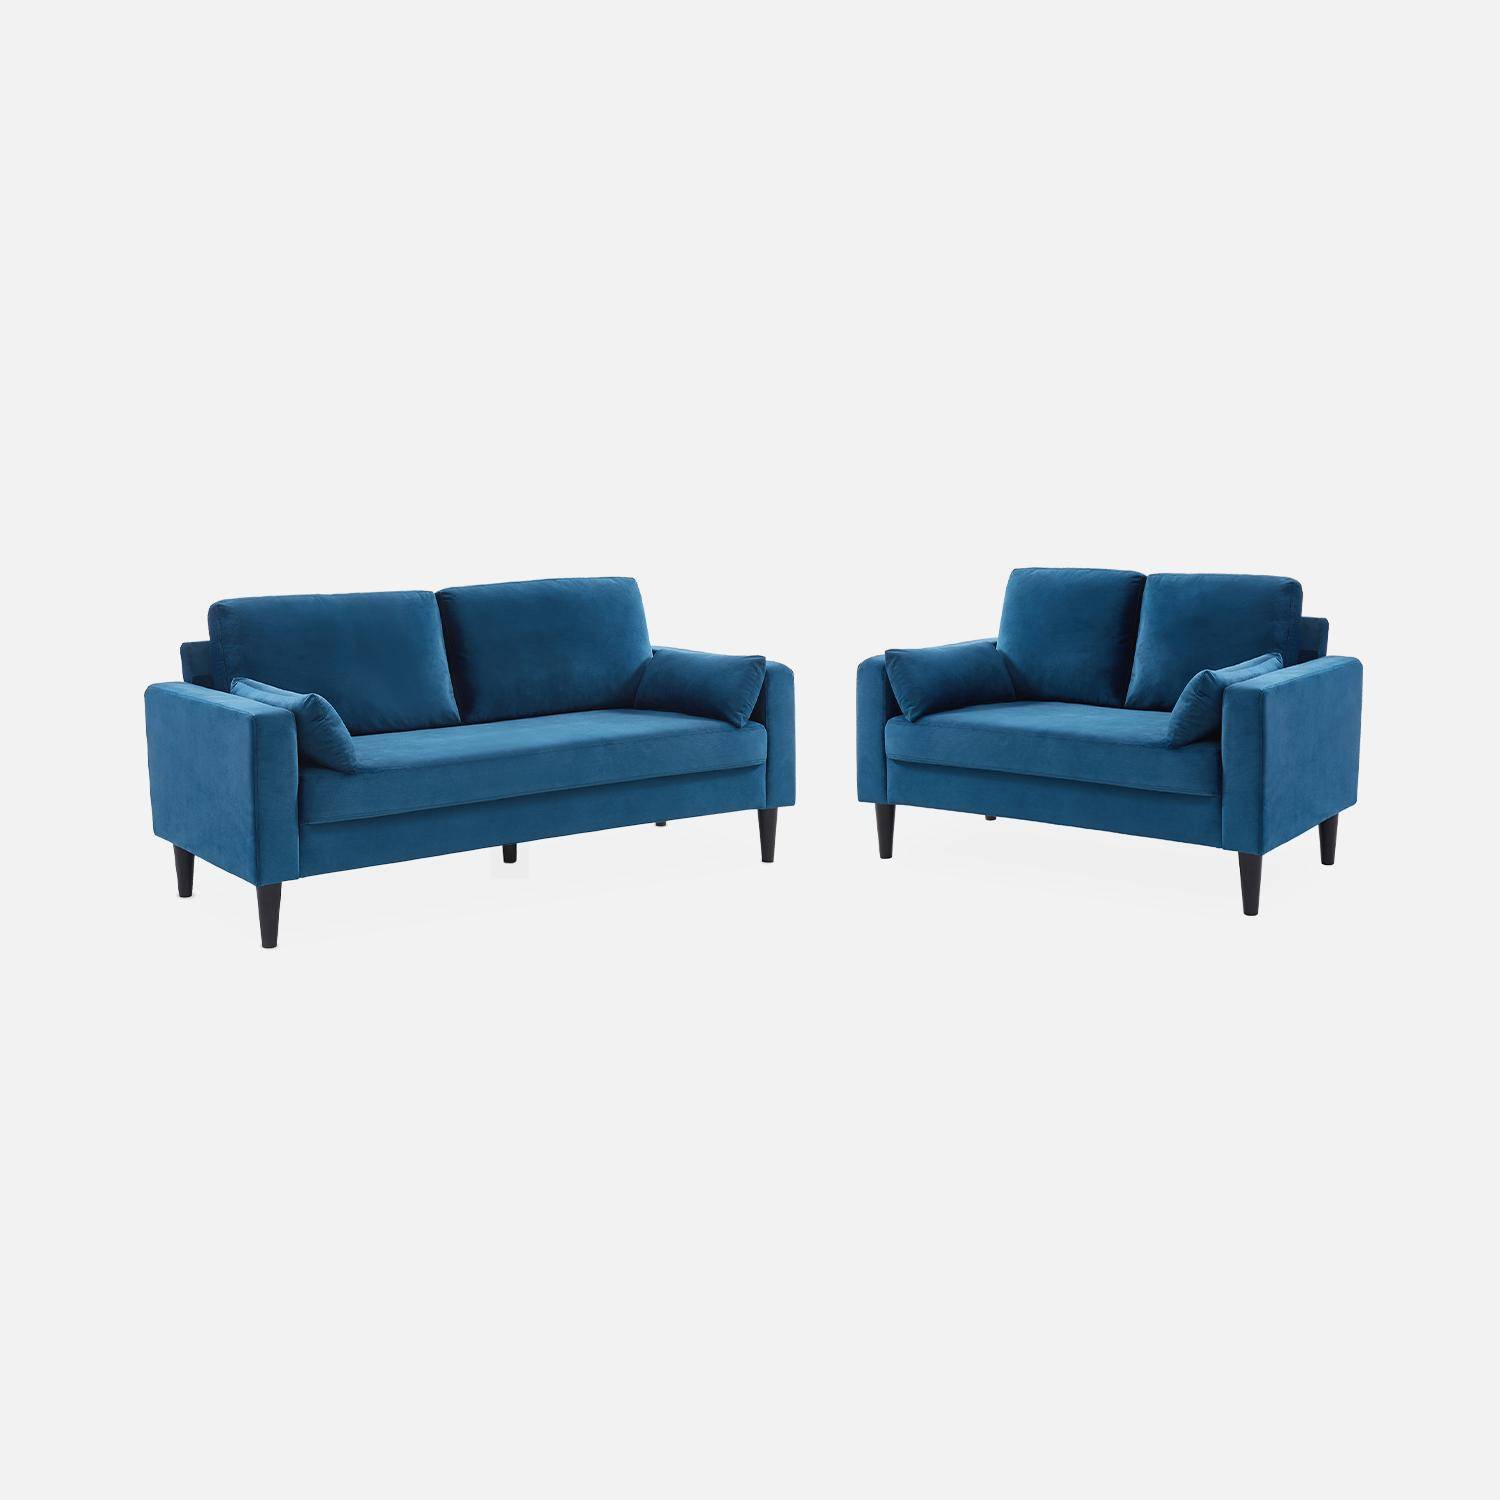 Driezits sofa van blauw velours - Bjorn - 3-zits bank met houten poten, scandinavische stijl   Photo6